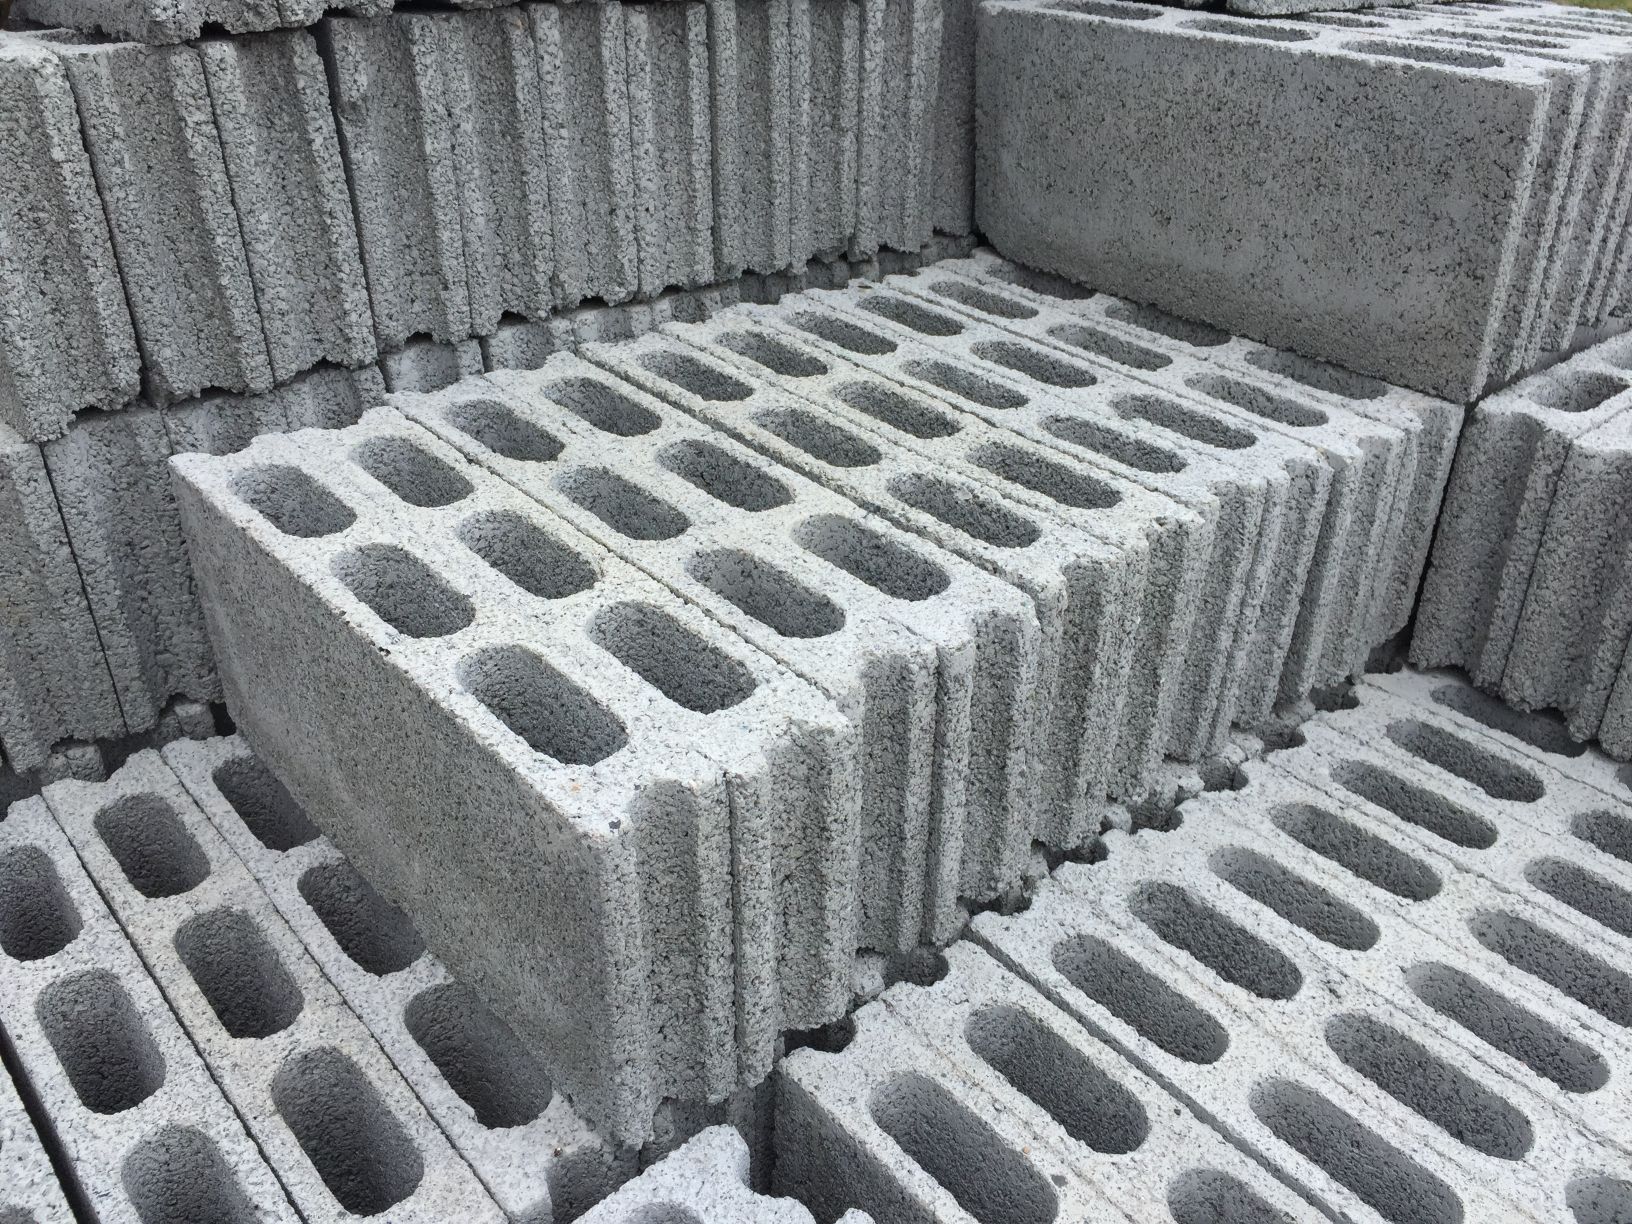 Concrete Block Types Shapes